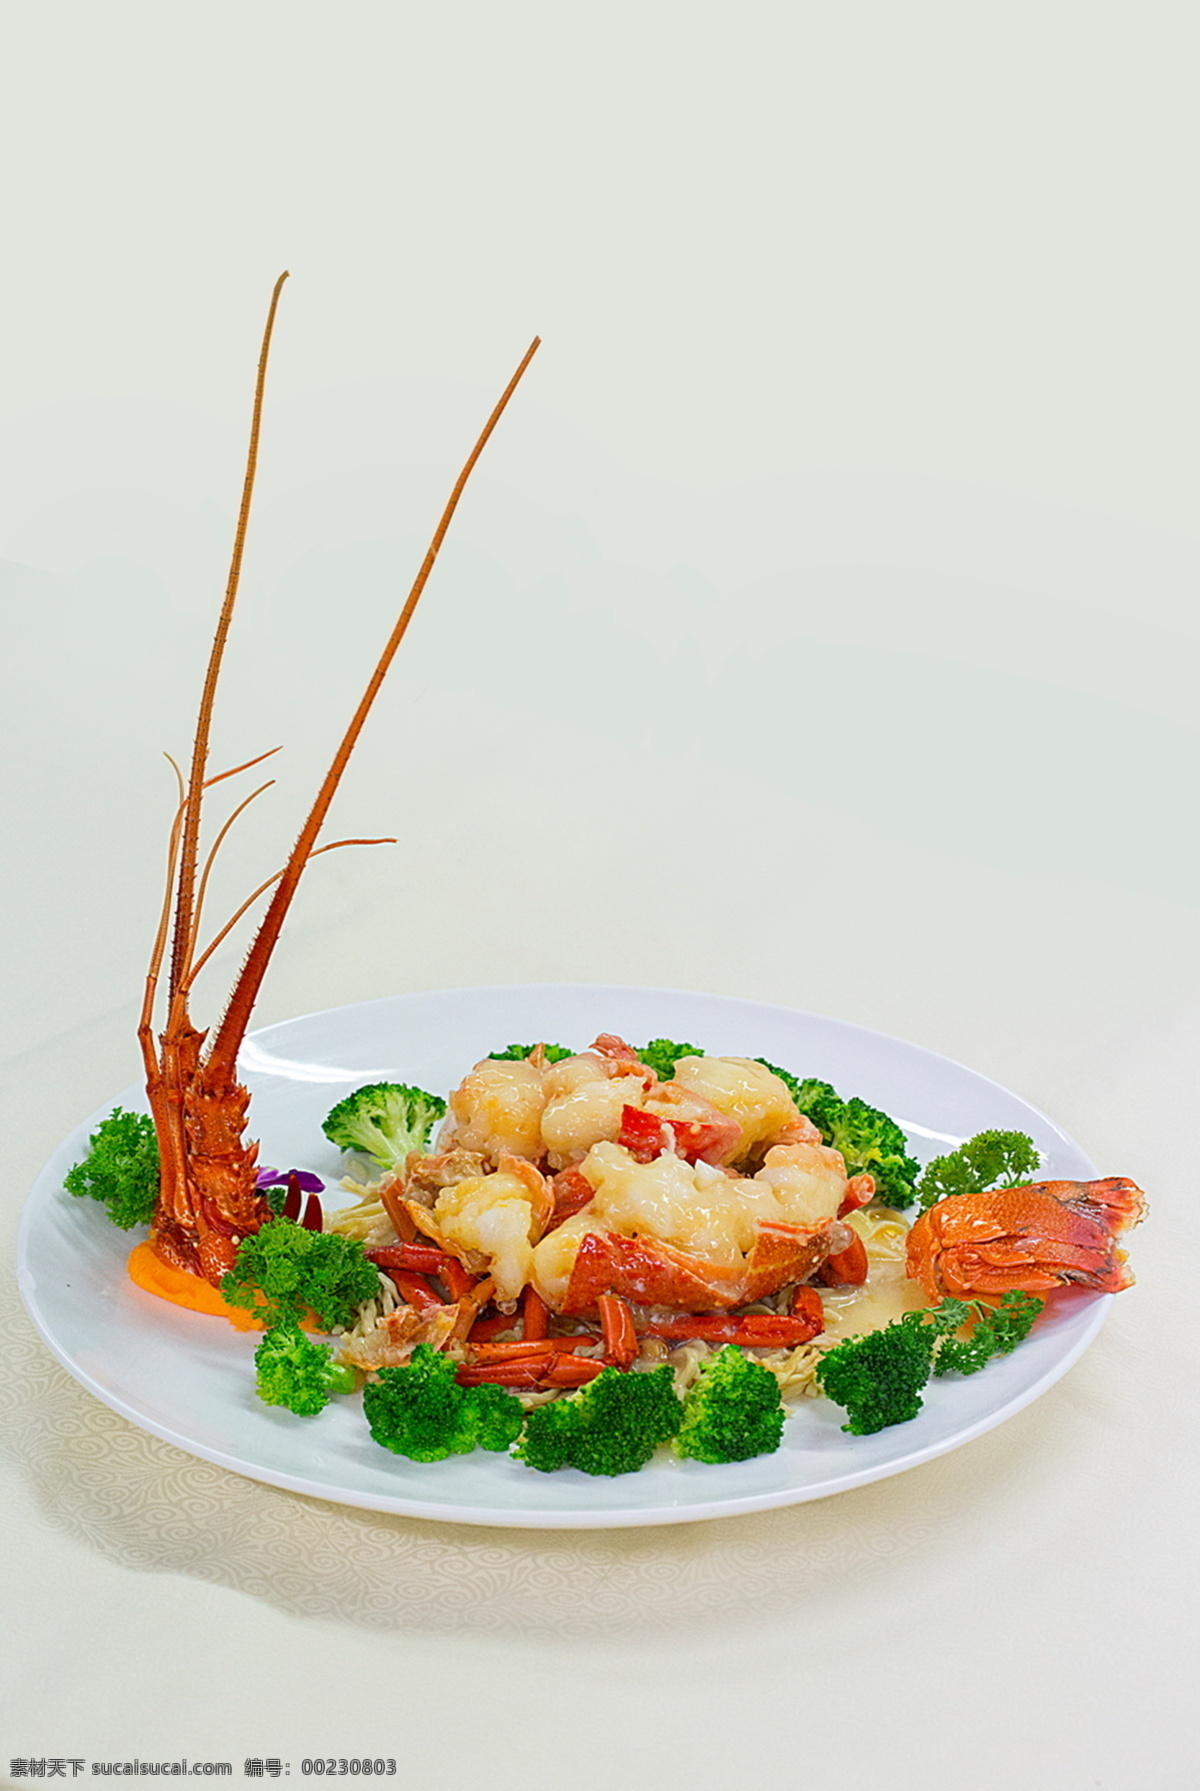 芝士焗龙虾 芝士 焗 龙虾 牛油 澳洲龙虾 餐饮美食 传统美食